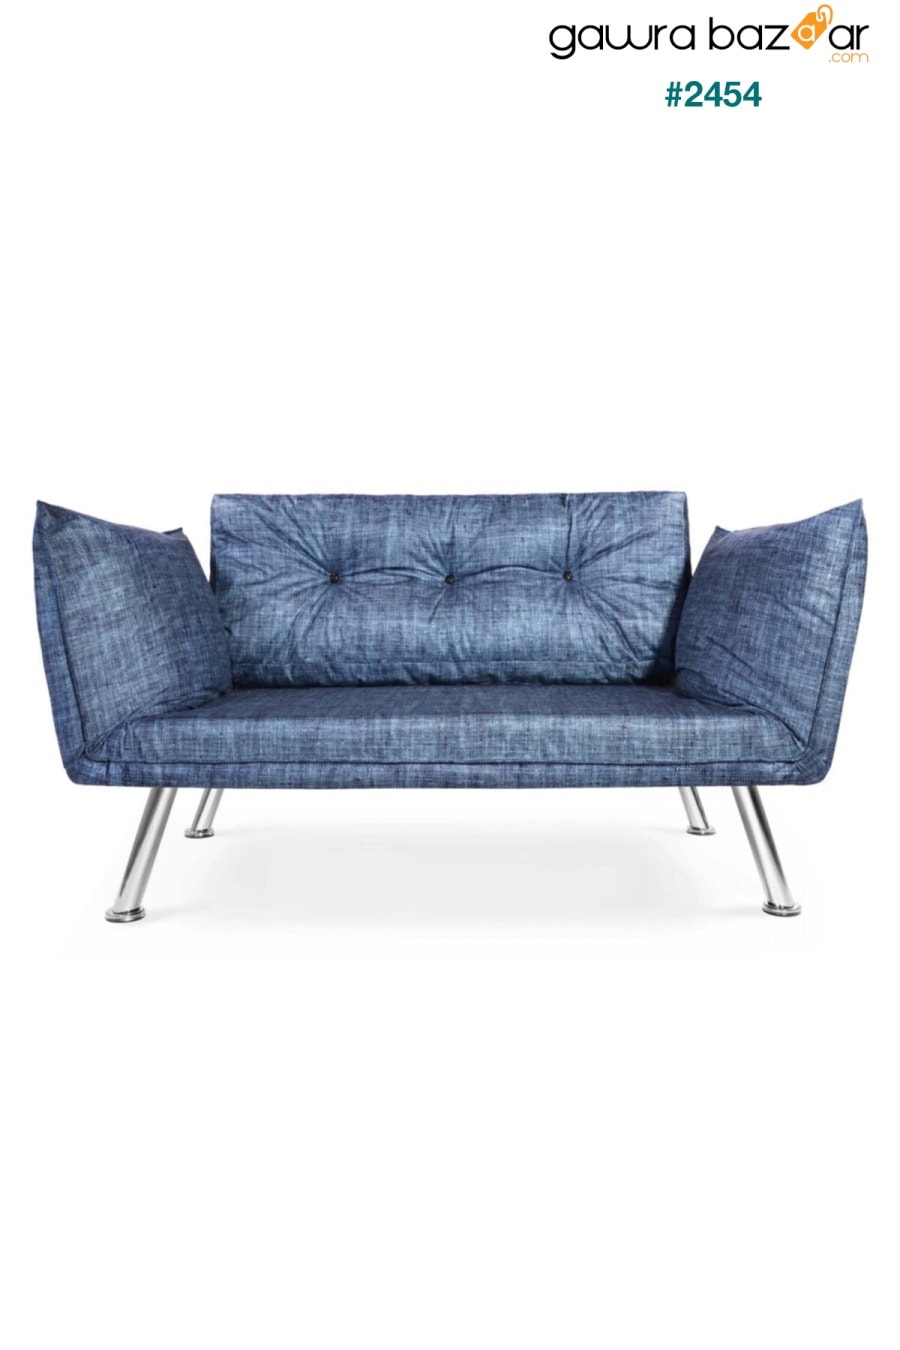 أريكة مزدوجة زرقاء مع كرسي بذراعين مزدوج Dekoro 0